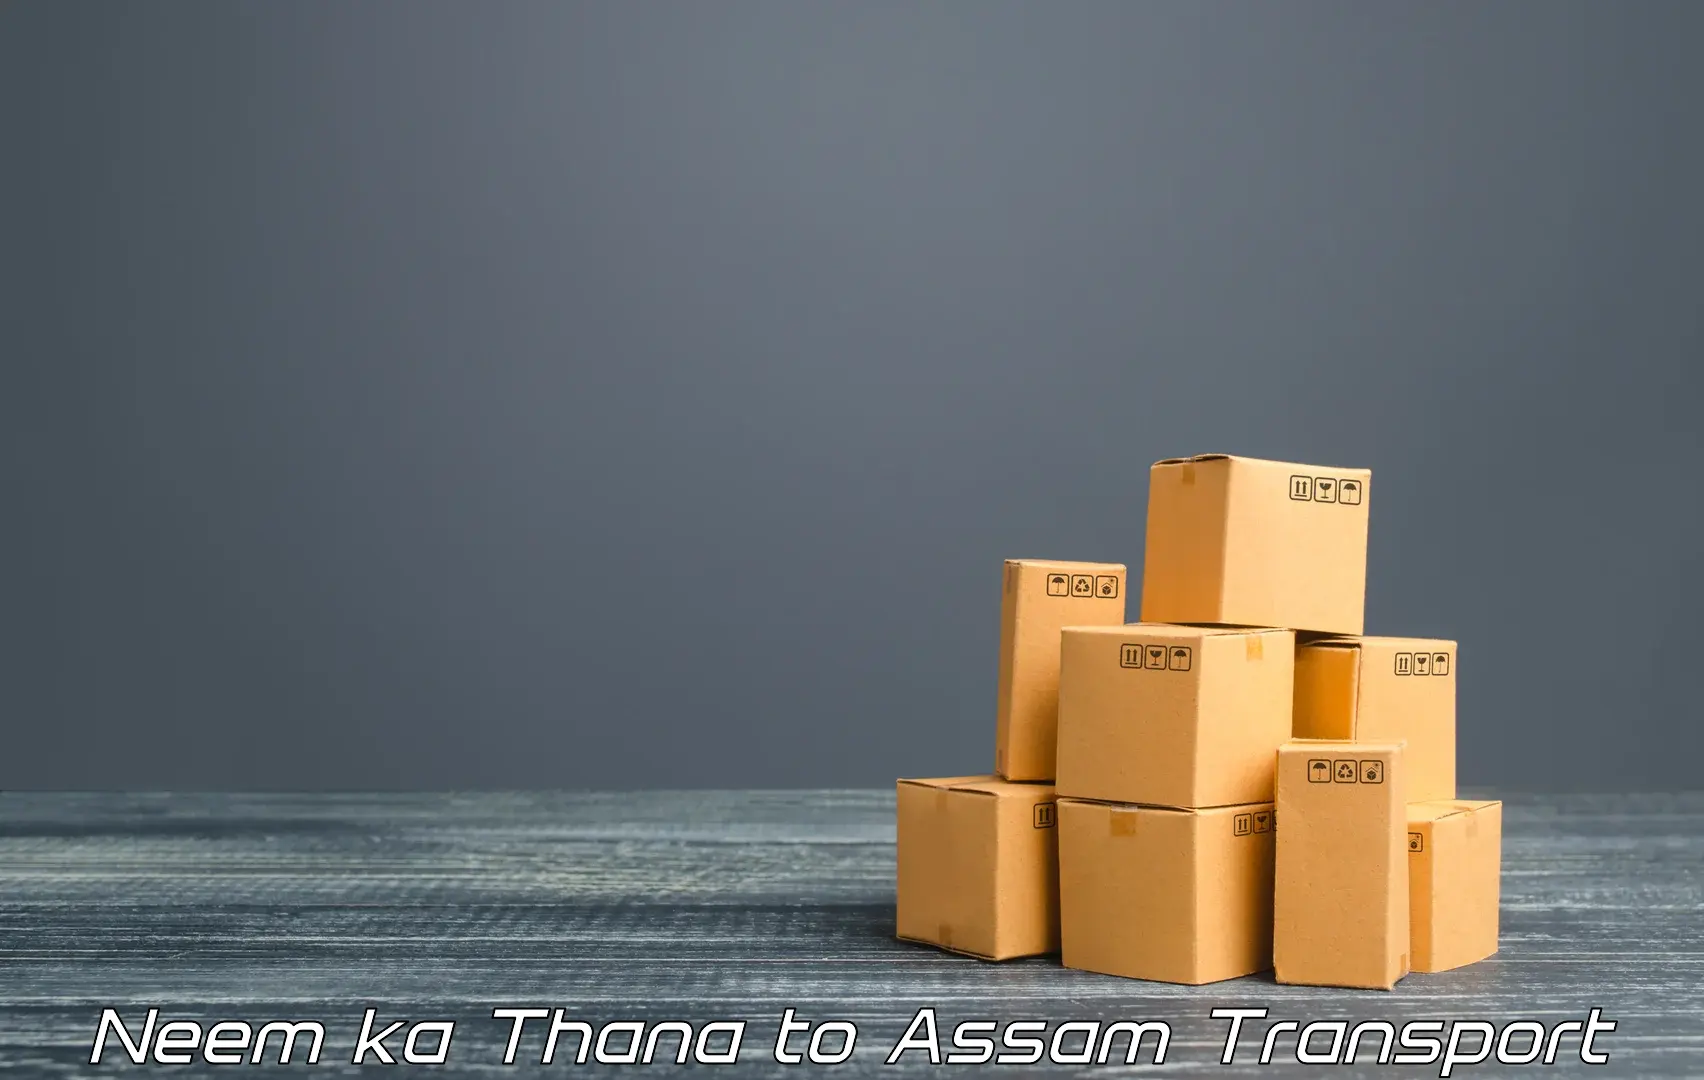 Container transport service Neem ka Thana to Hajo